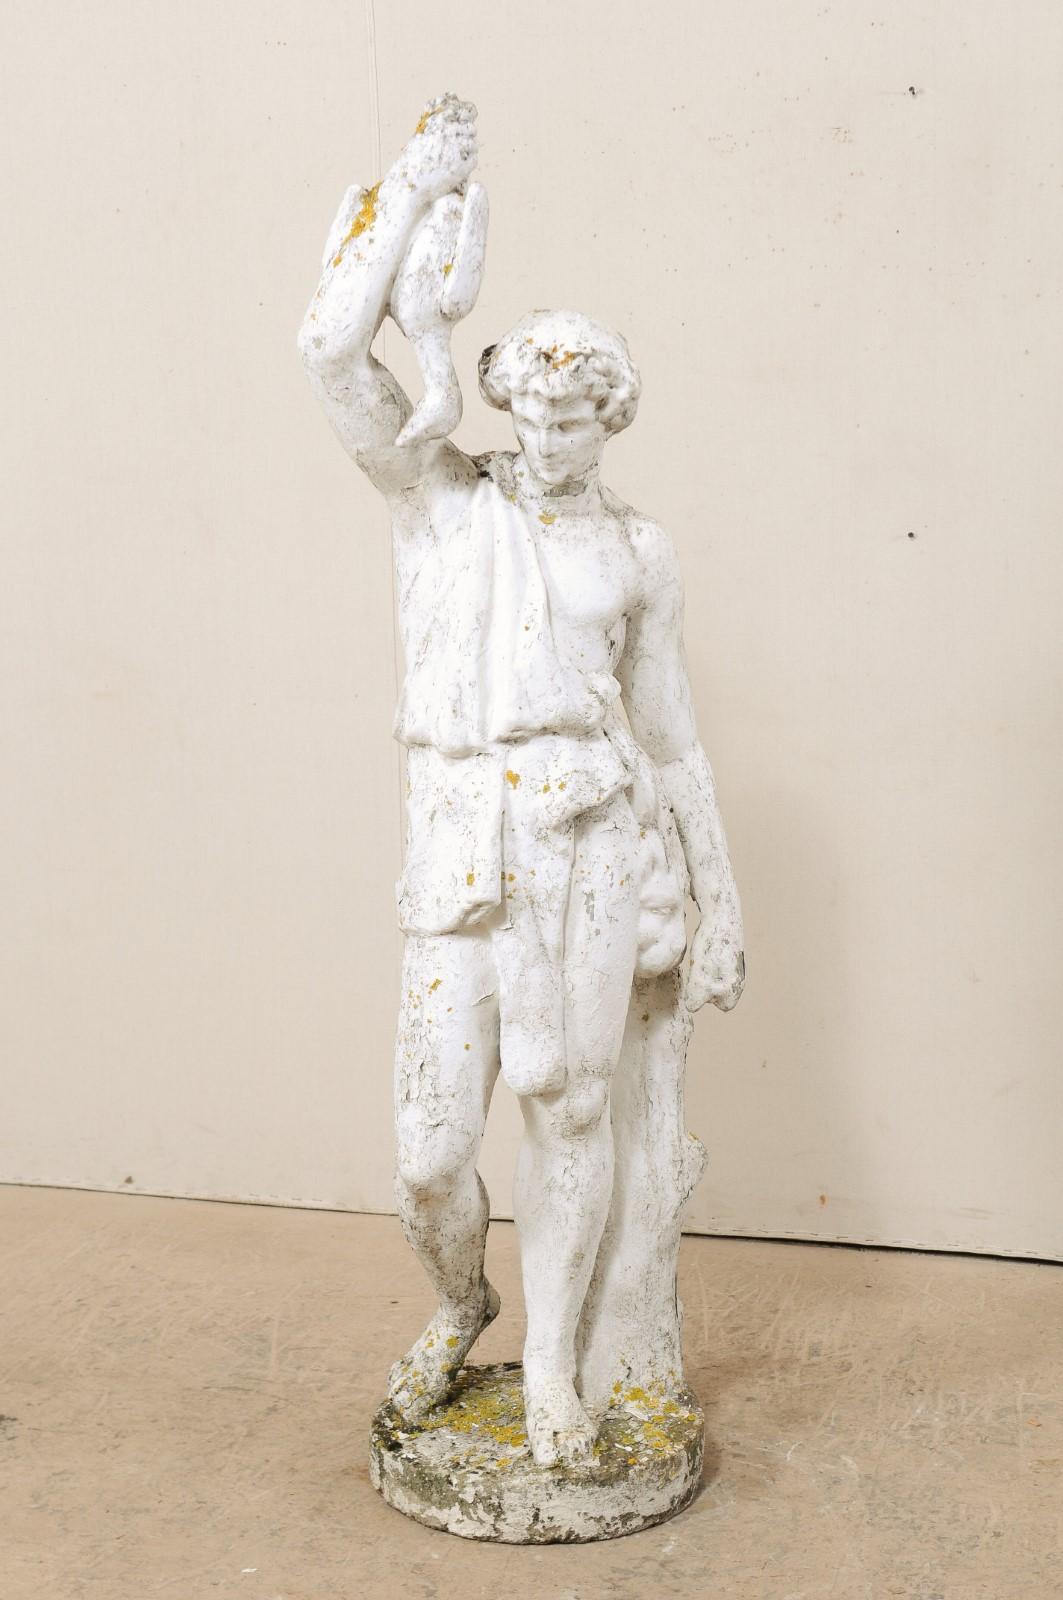 Hohe französische Gartenskulptur einer männlichen Figur aus dem frühen 20. Jahrhundert. Diese antike Gusssteinstatue aus Frankreich zeigt eine männliche Figur in klassischer Kleidung, die an einem kleinen Baumstamm steht und mit erhobener Hand eine